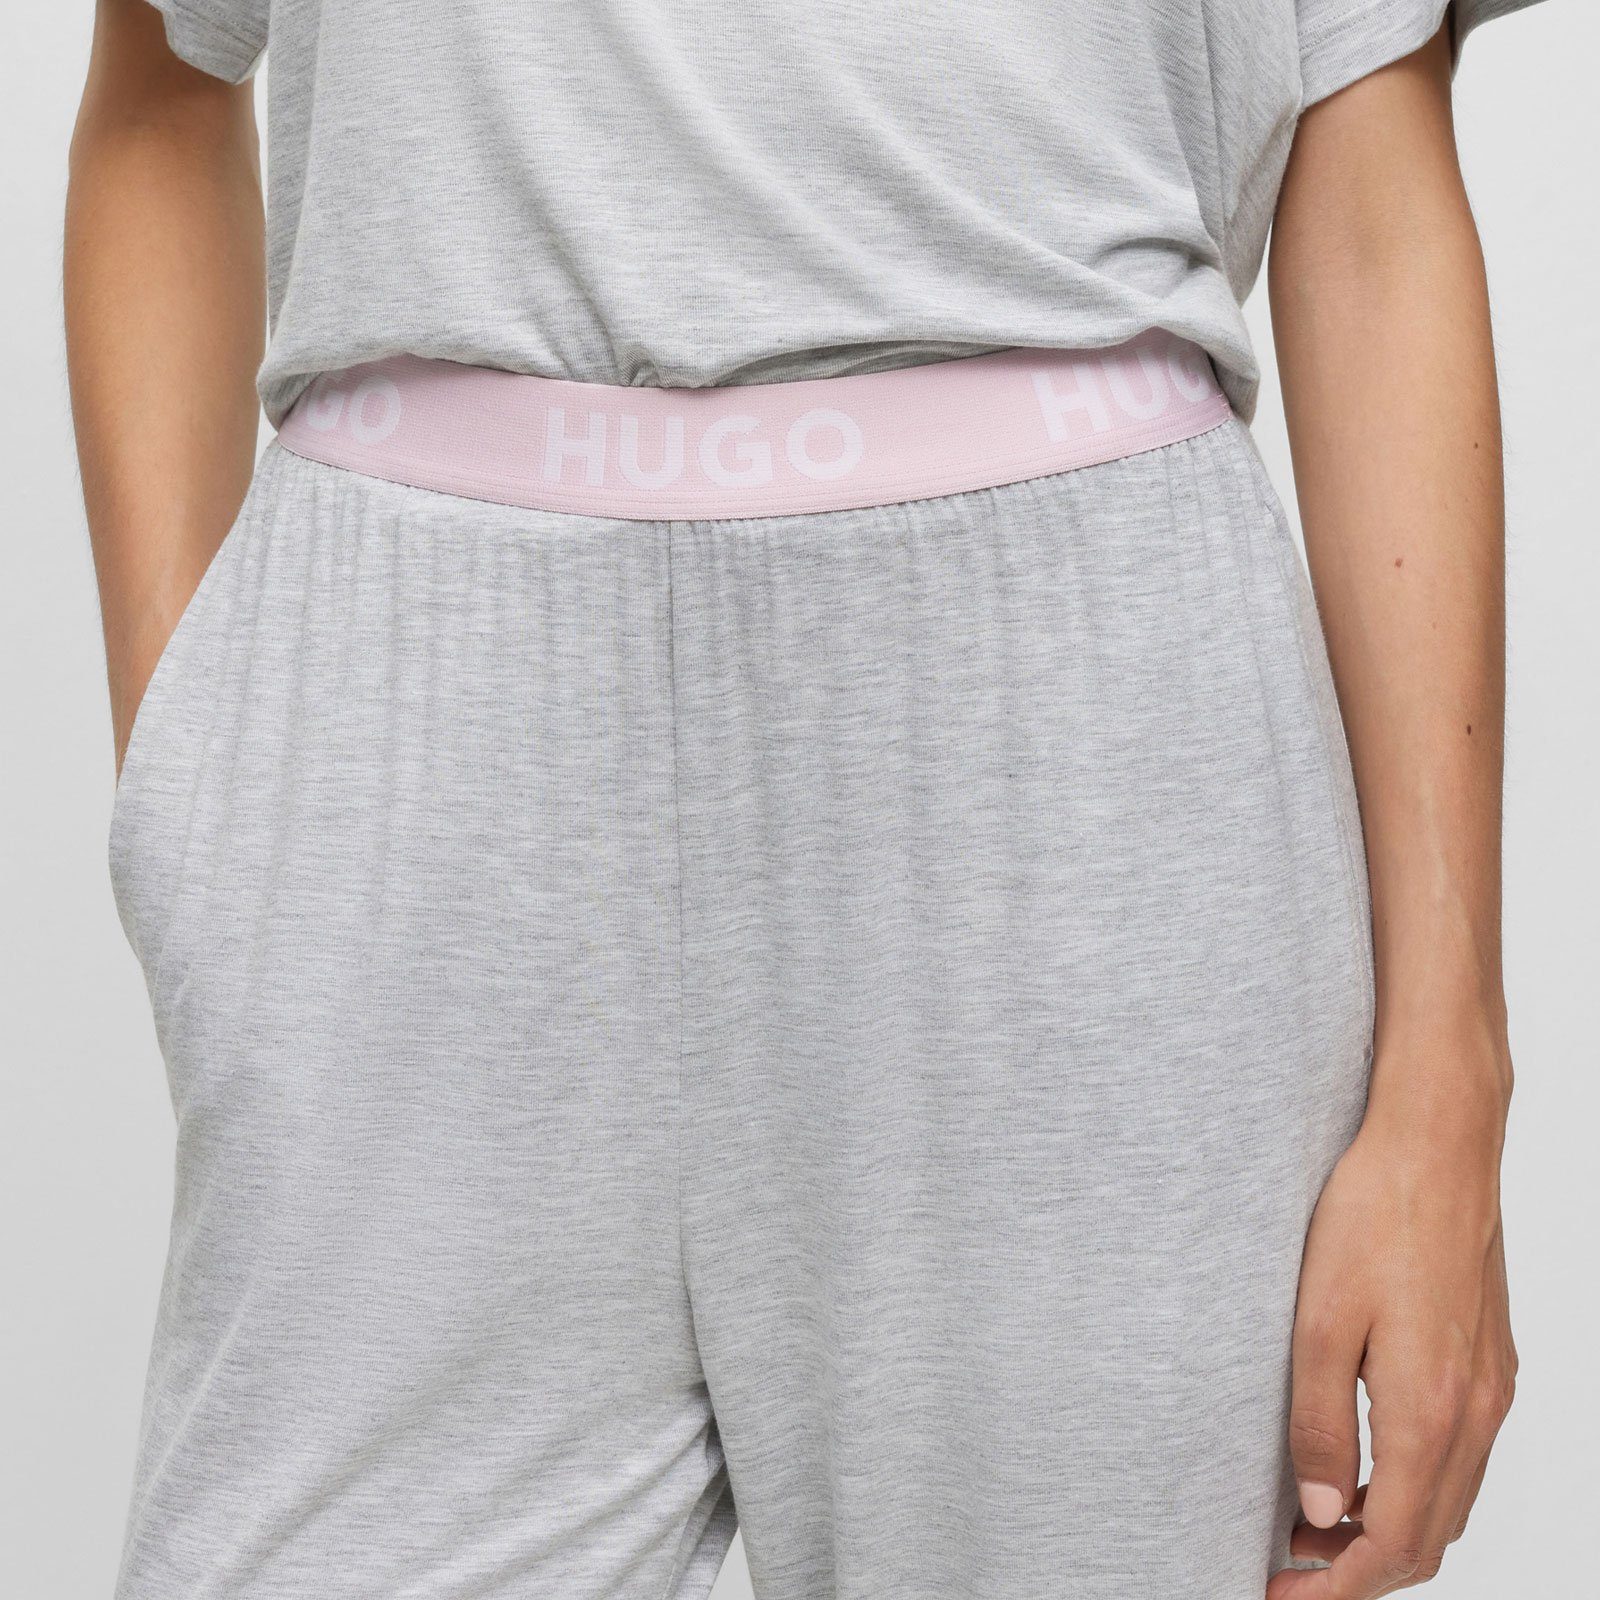 035 HUGO Unite mit Pants mit Bund grey Marken-Logos sichtbarem Pyjamahose